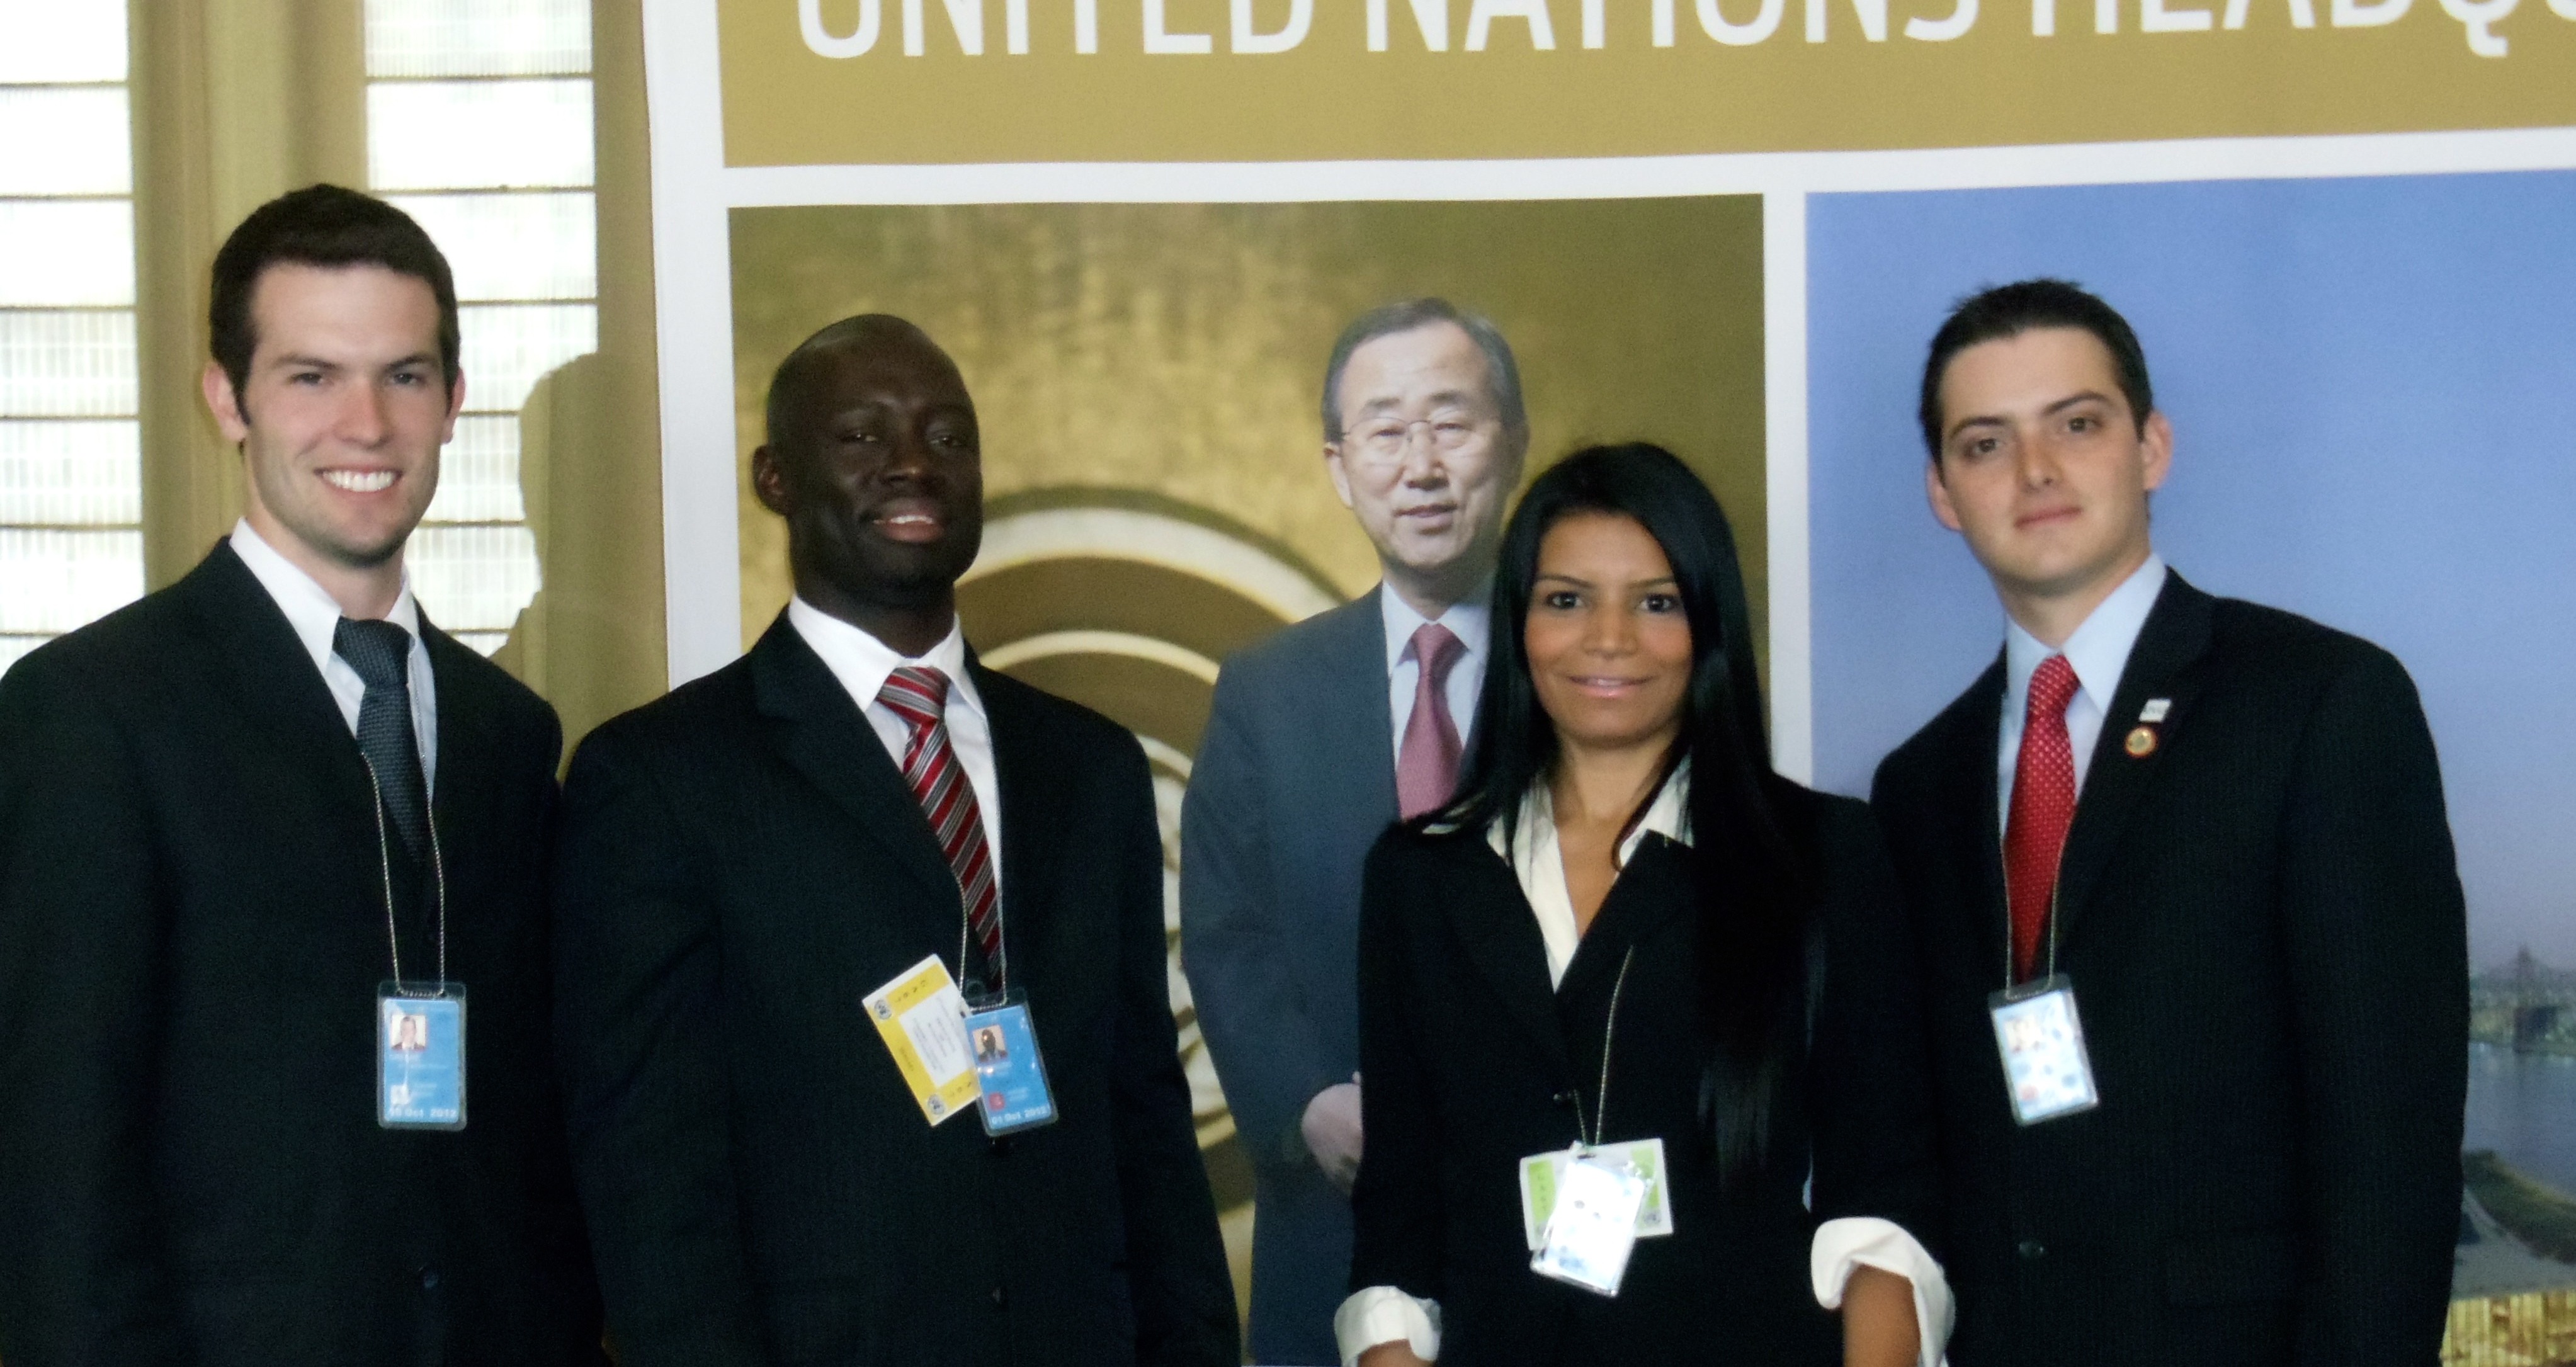 Model UN Club Observes UN General Assembly